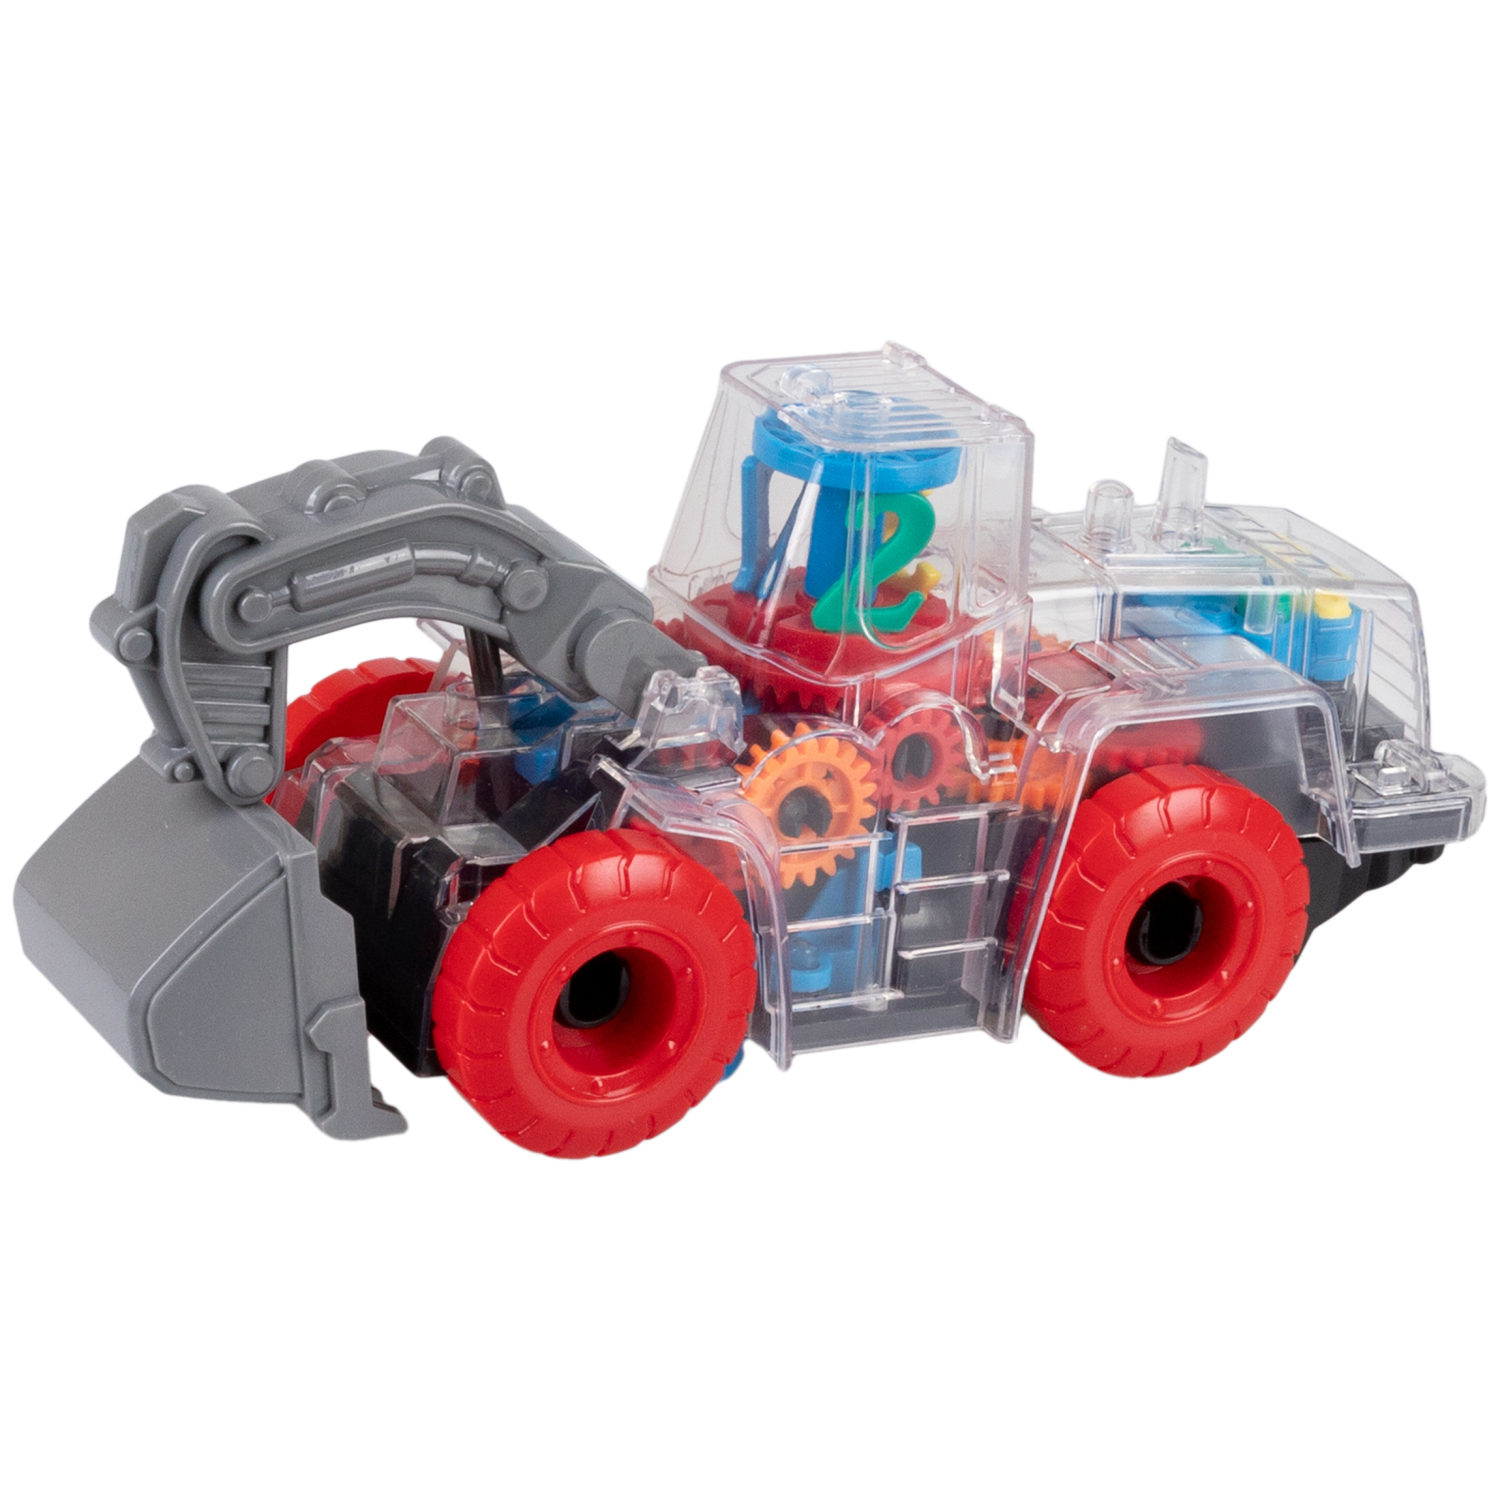 Машинка 1toy Движок Спецтехника с прозрачным с механизмом на батарейках, красный с синим